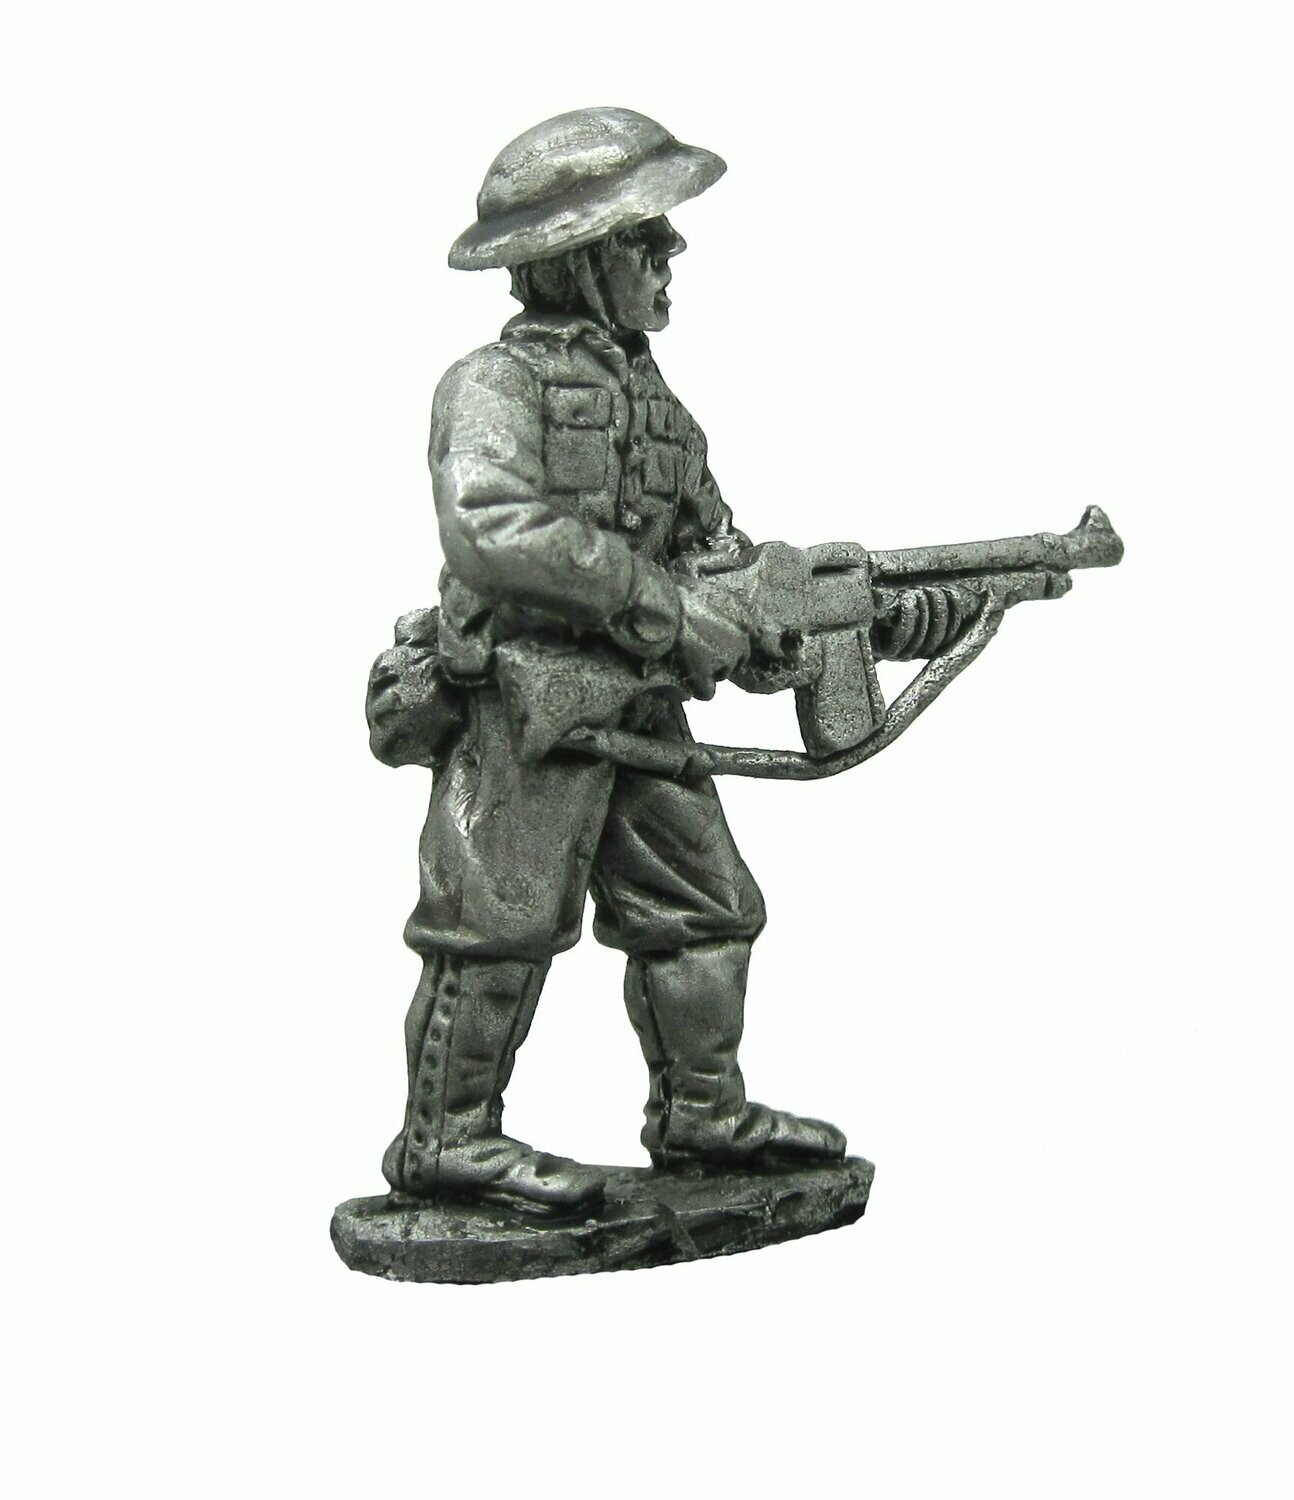 WW2 US infantryman with BAR